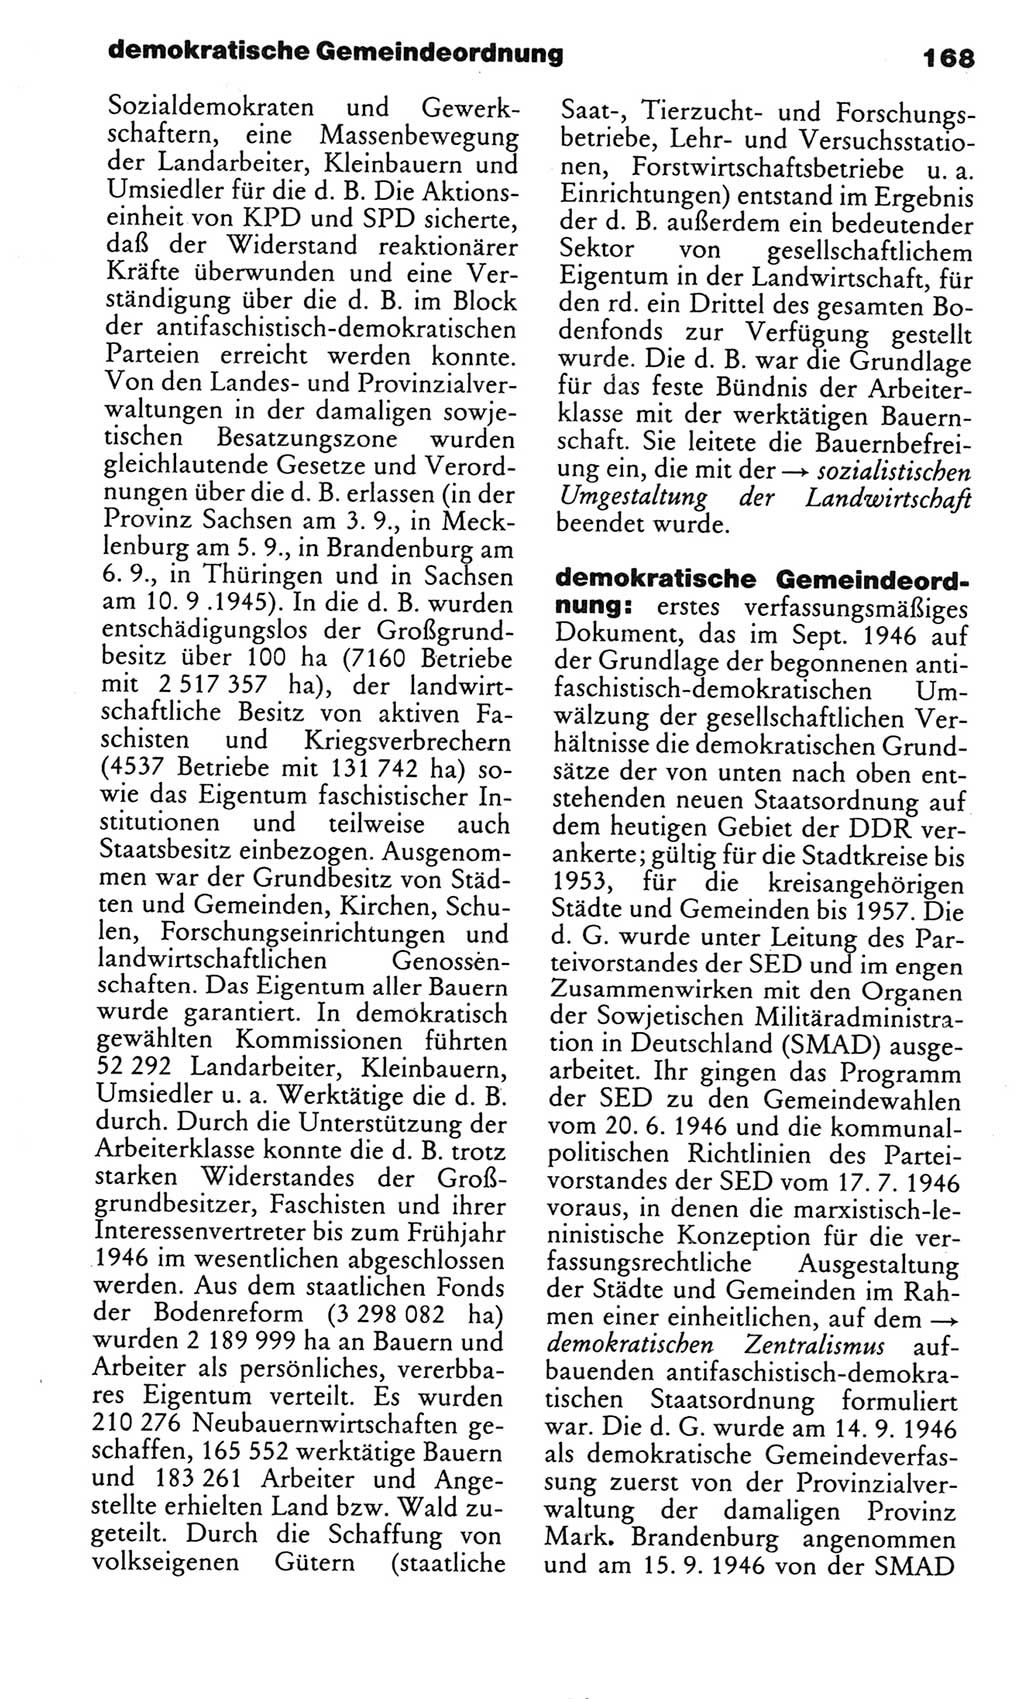 Kleines politisches Wörterbuch [Deutsche Demokratische Republik (DDR)] 1985, Seite 168 (Kl. pol. Wb. DDR 1985, S. 168)